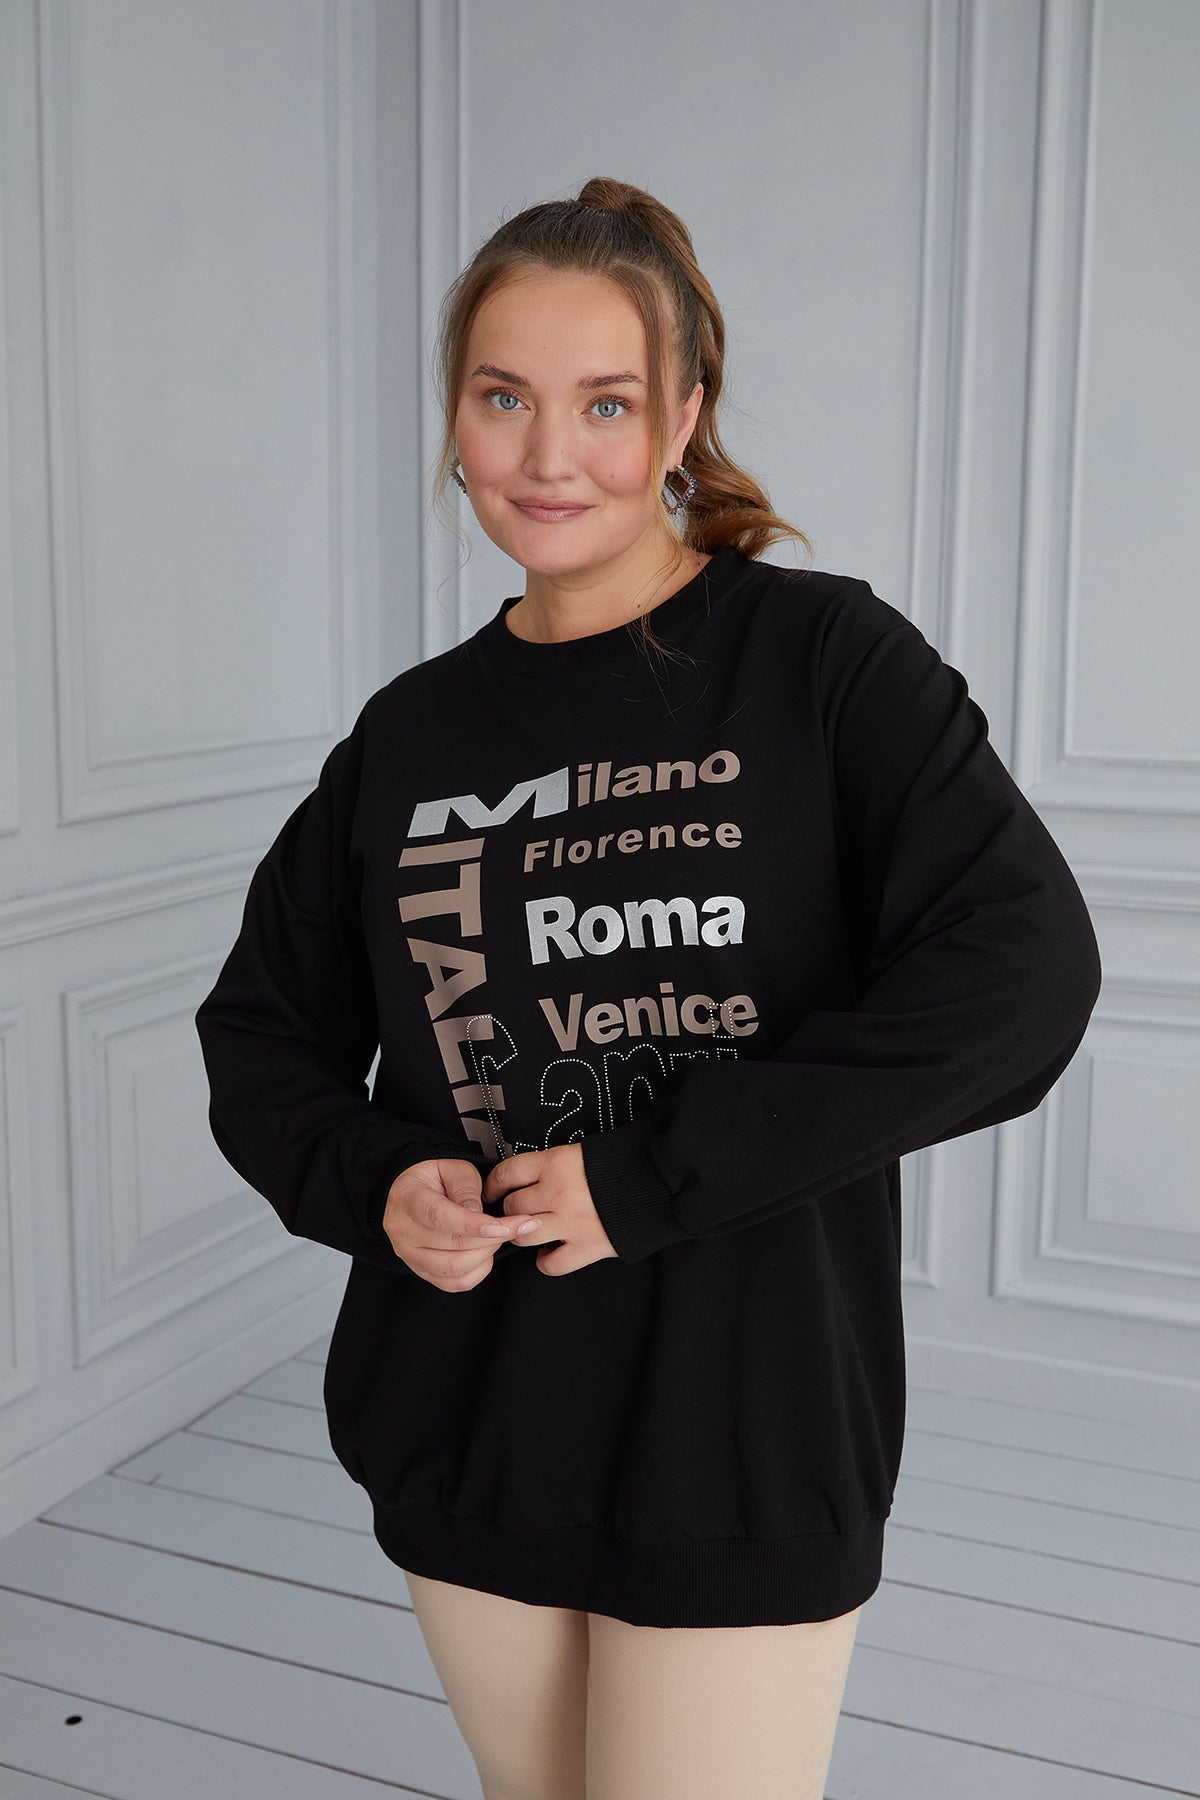 Γυναικεία μπλούζα με στάμπα Italia σε μεγάλα μεγέθη- Μαύρο